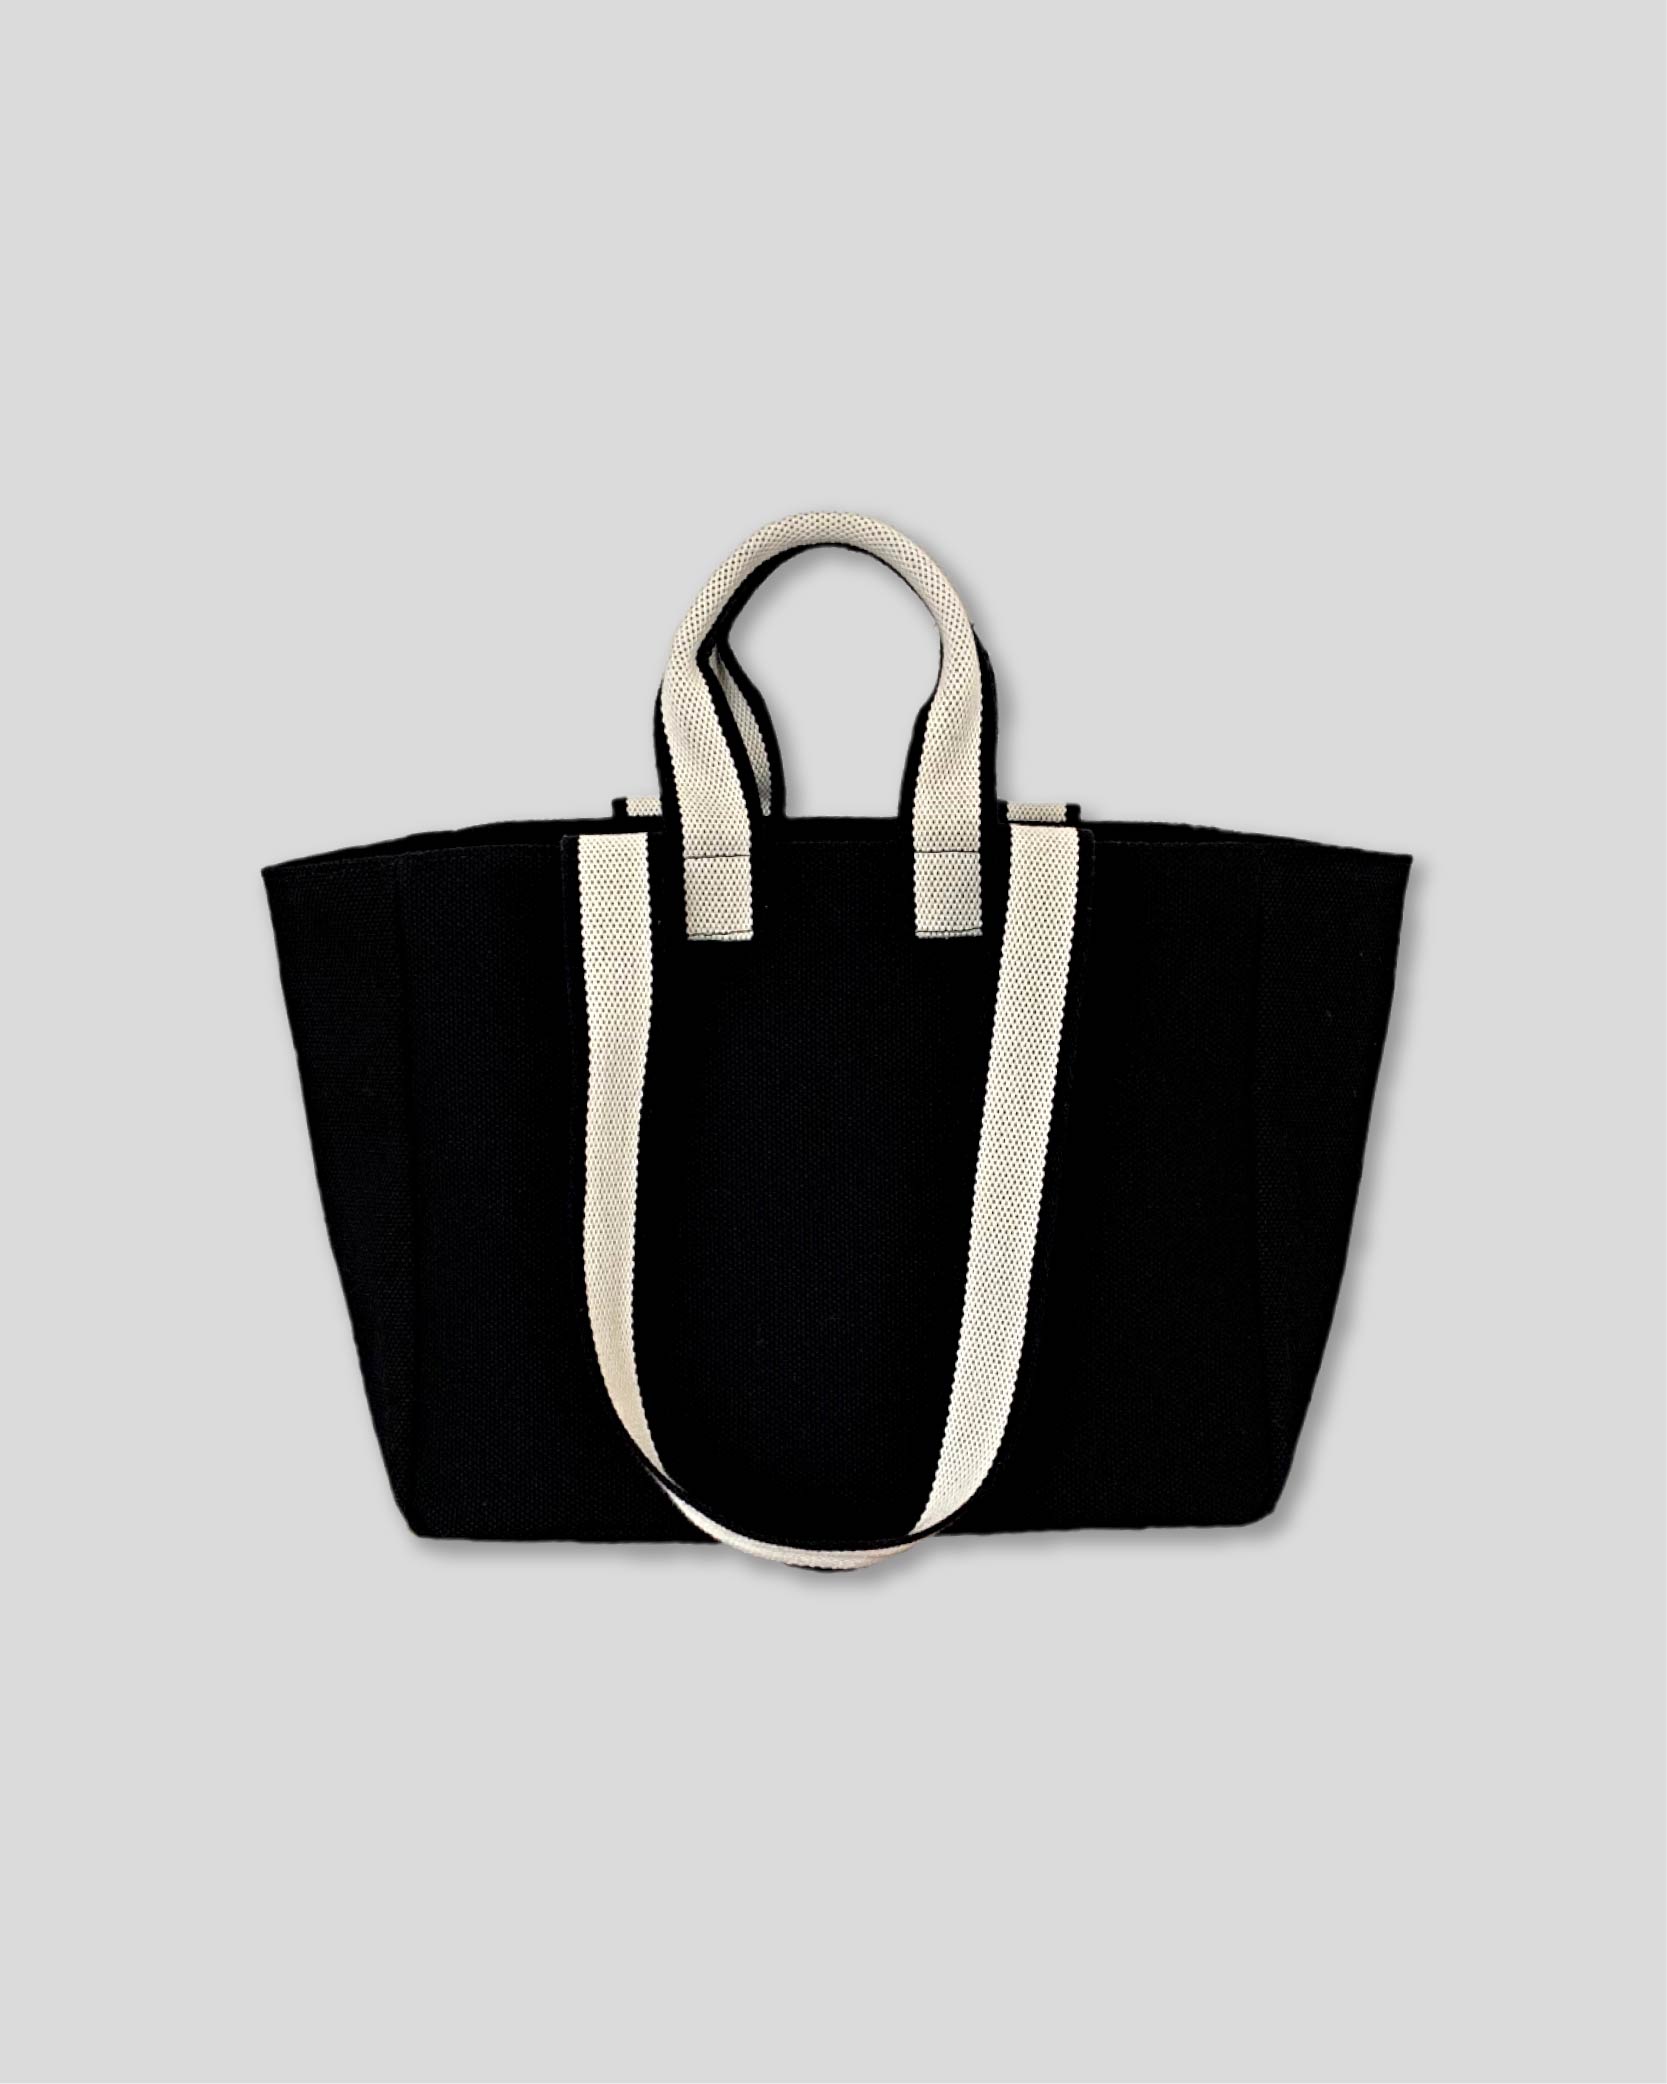 언폴드,unfold,에코백,파우치,천가방,친환경가방,[2/10 예약배송]Two-tone strap bag (black)